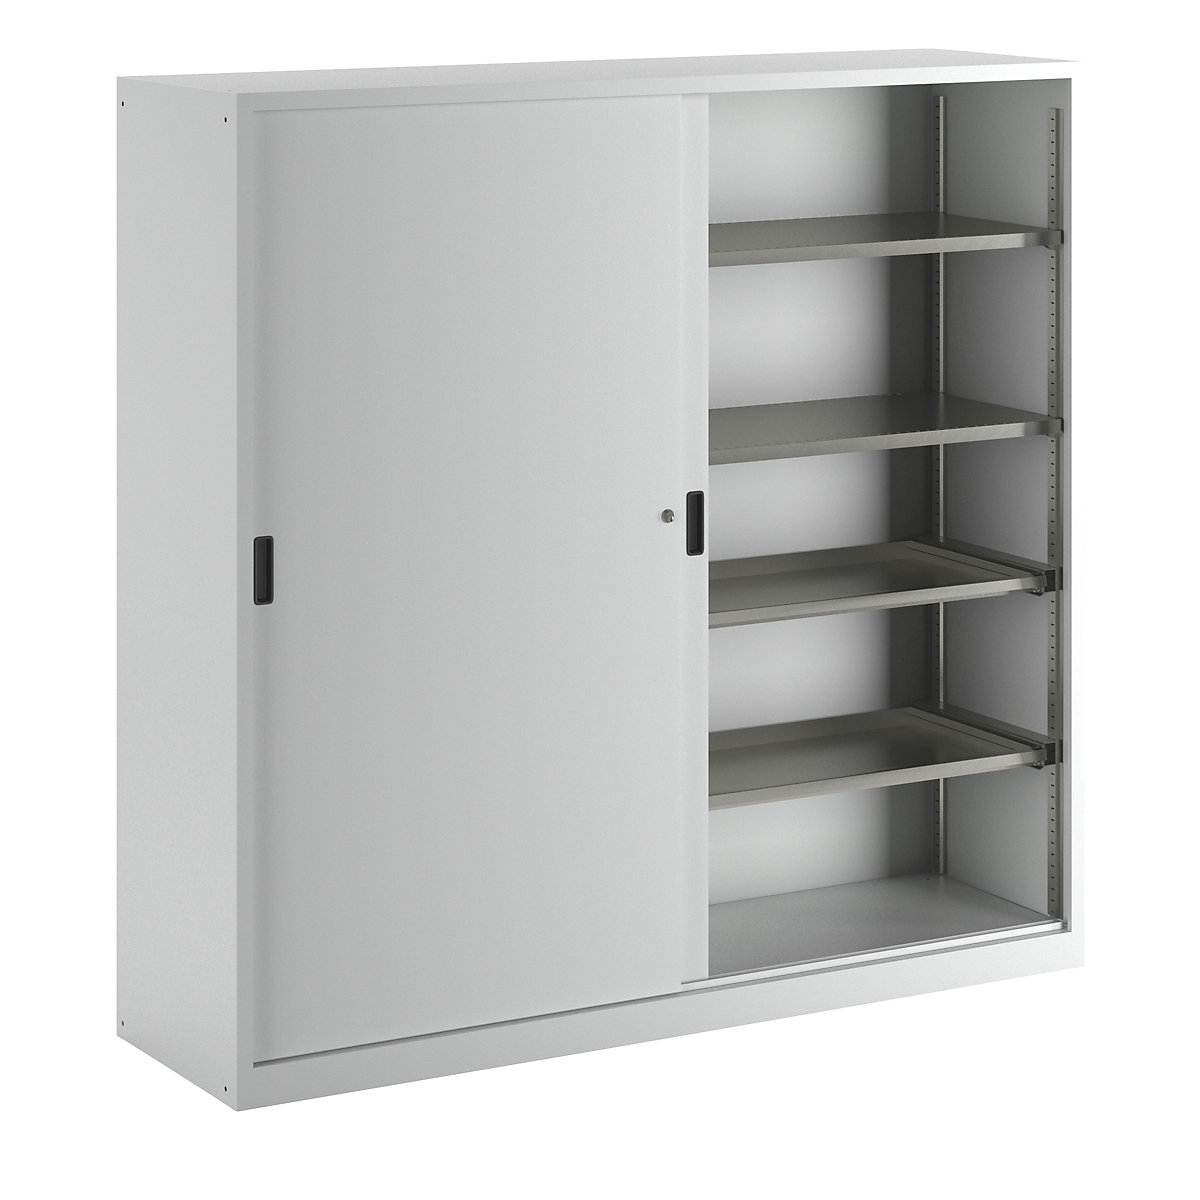 Sliding door cupboard with solid panel doors – LISTA